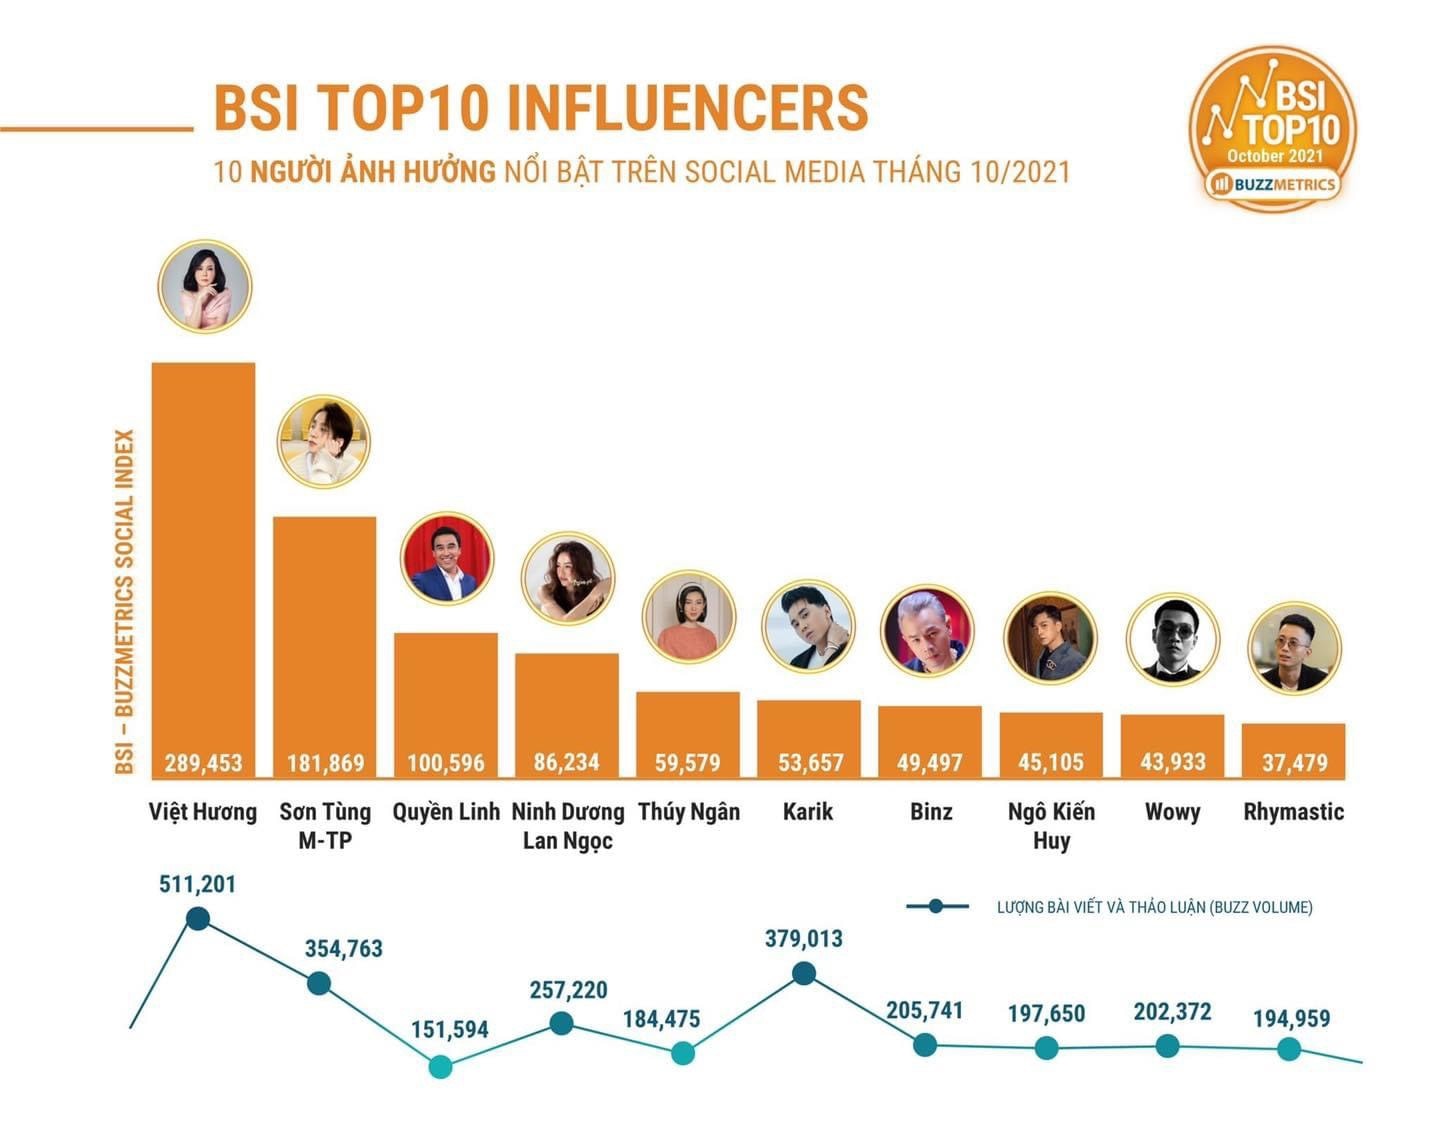 3 tháng liên tiếp Việt Hương đạt Top 1 những người ảnh hưởng nhất trên social media.